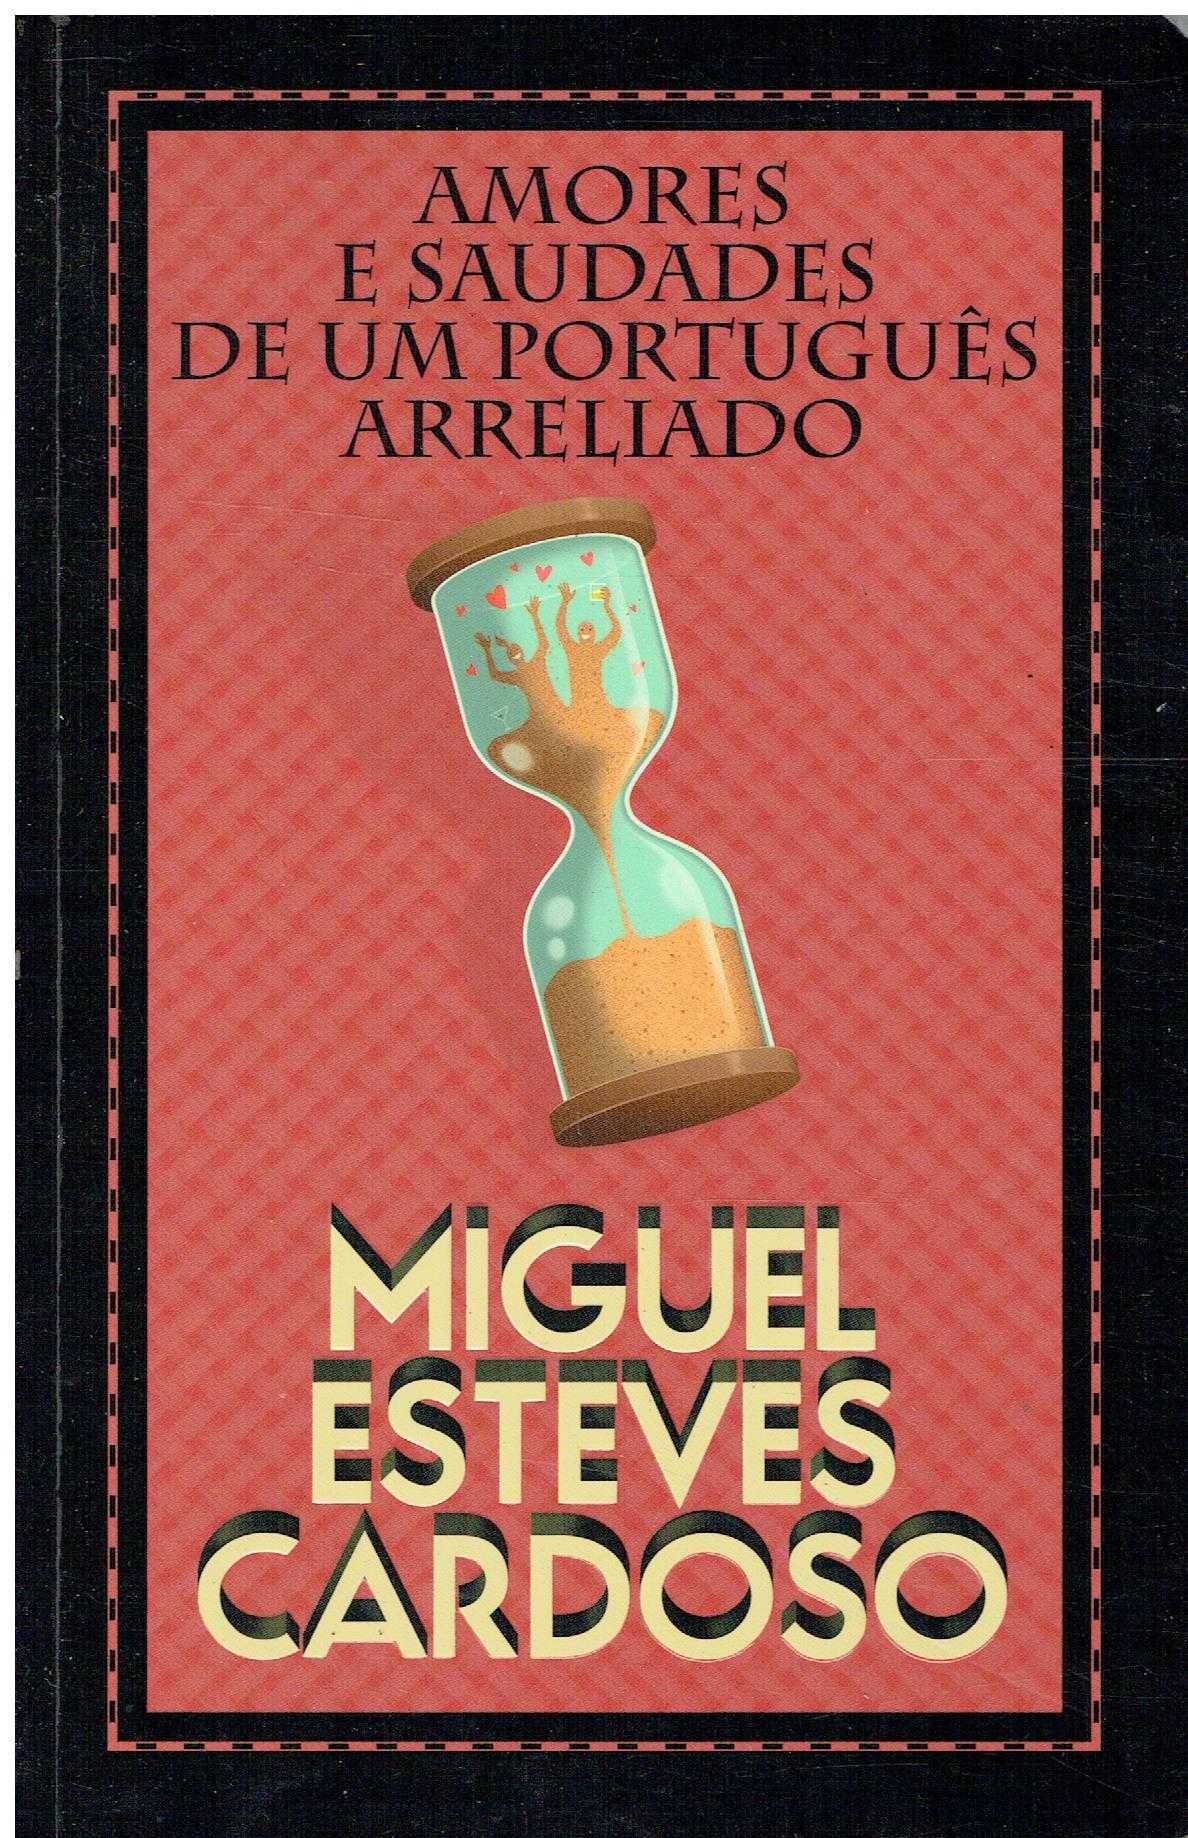 4232 Amores e Saudades de Um Português
de Miguel Esteves Cardoso